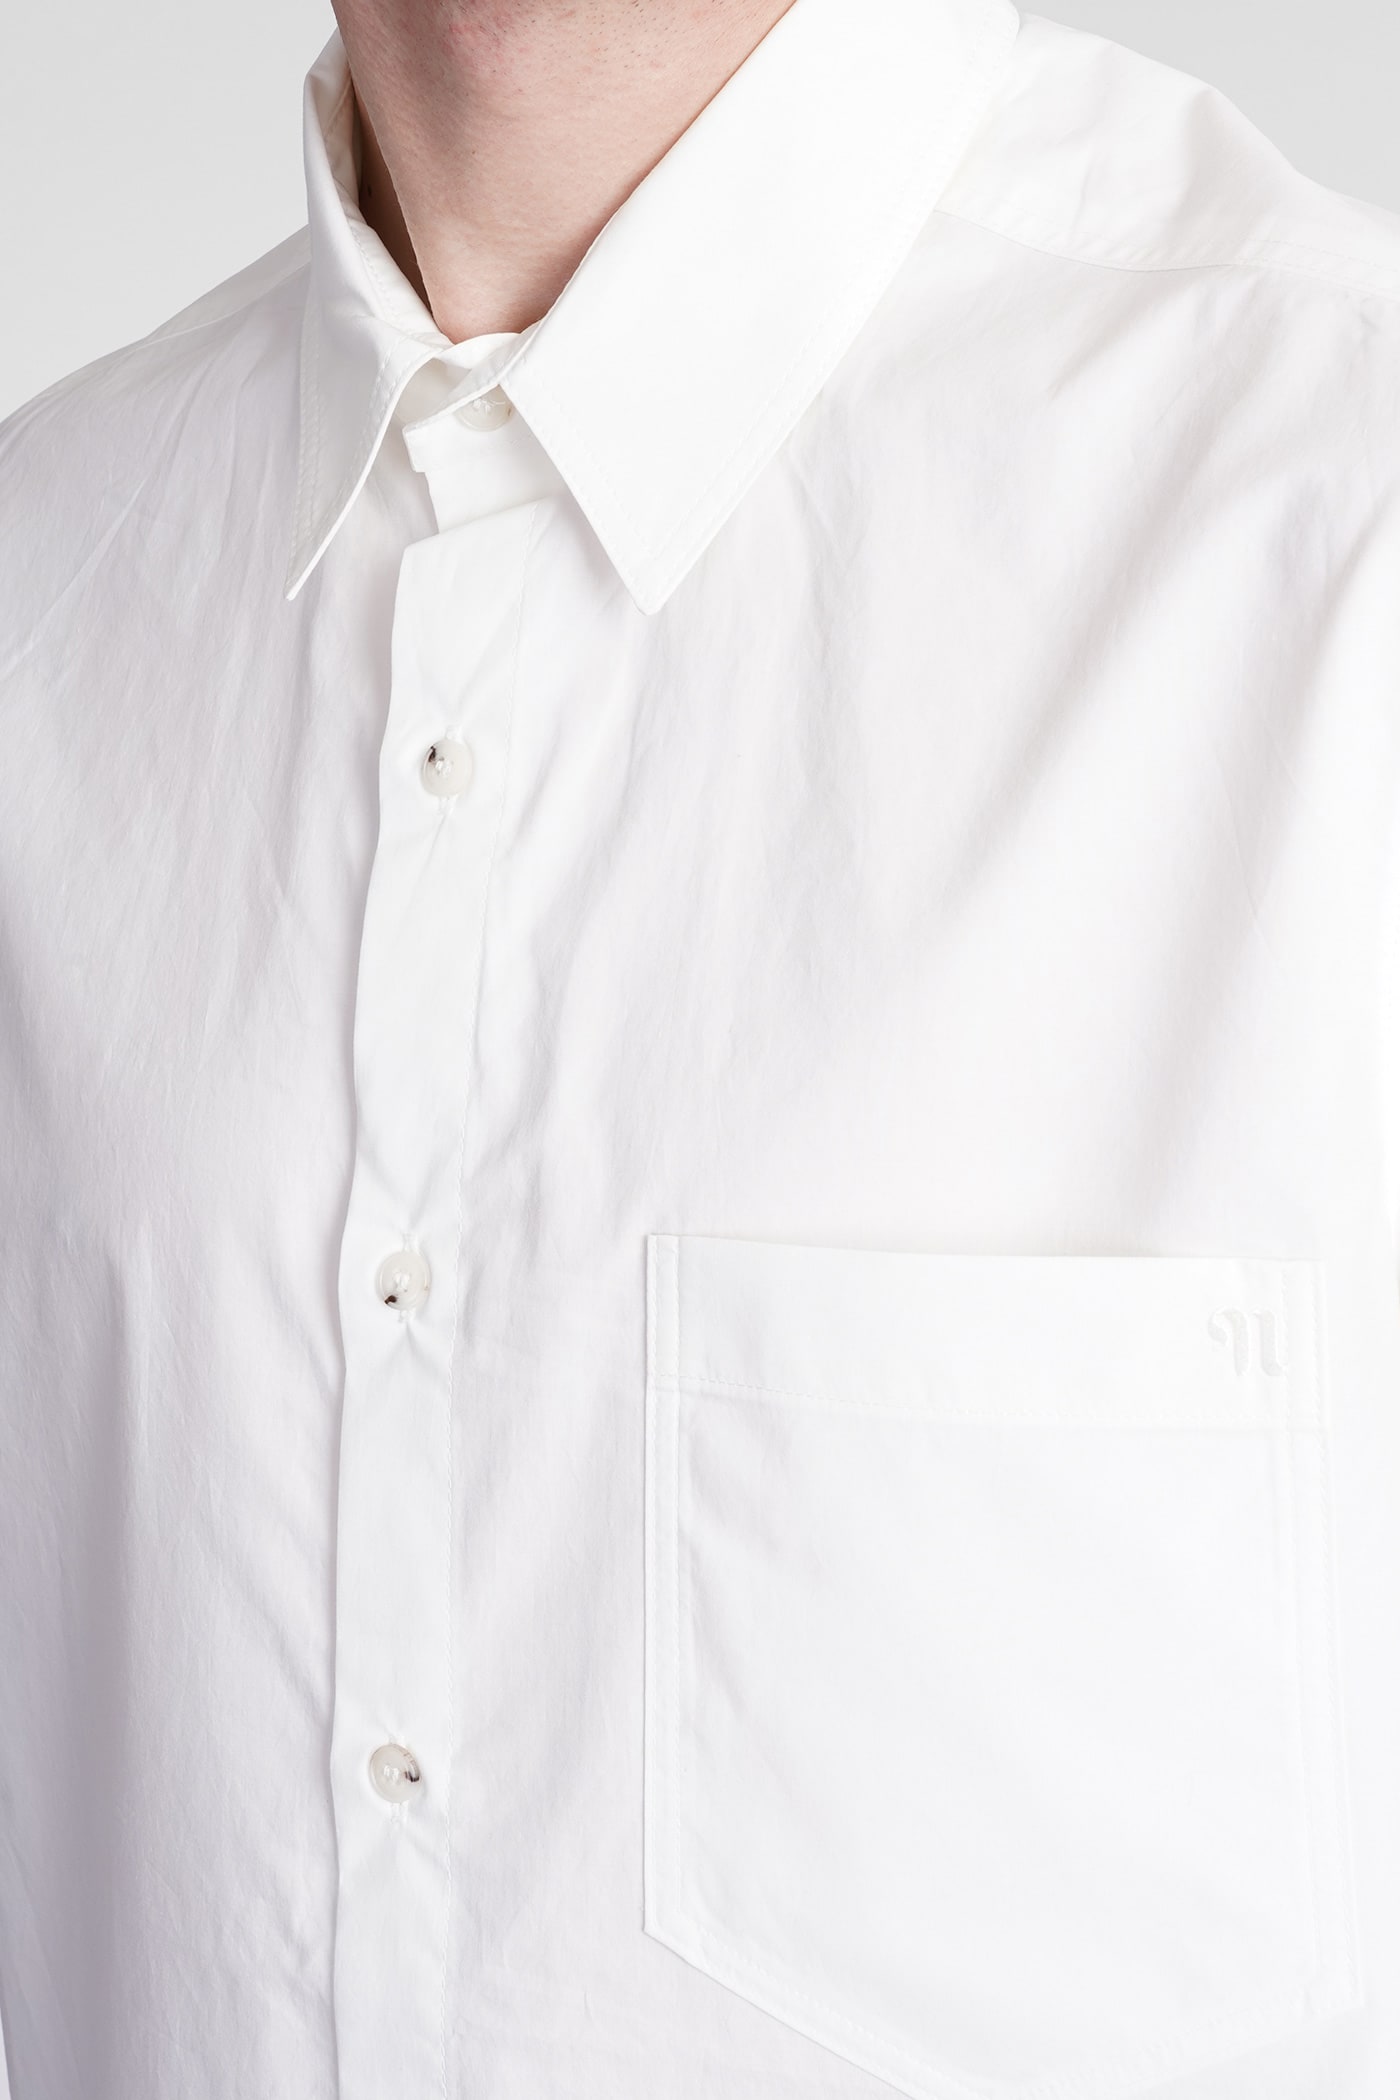 Adam - Striped Cotton Shirt - White Blue – Nanushka